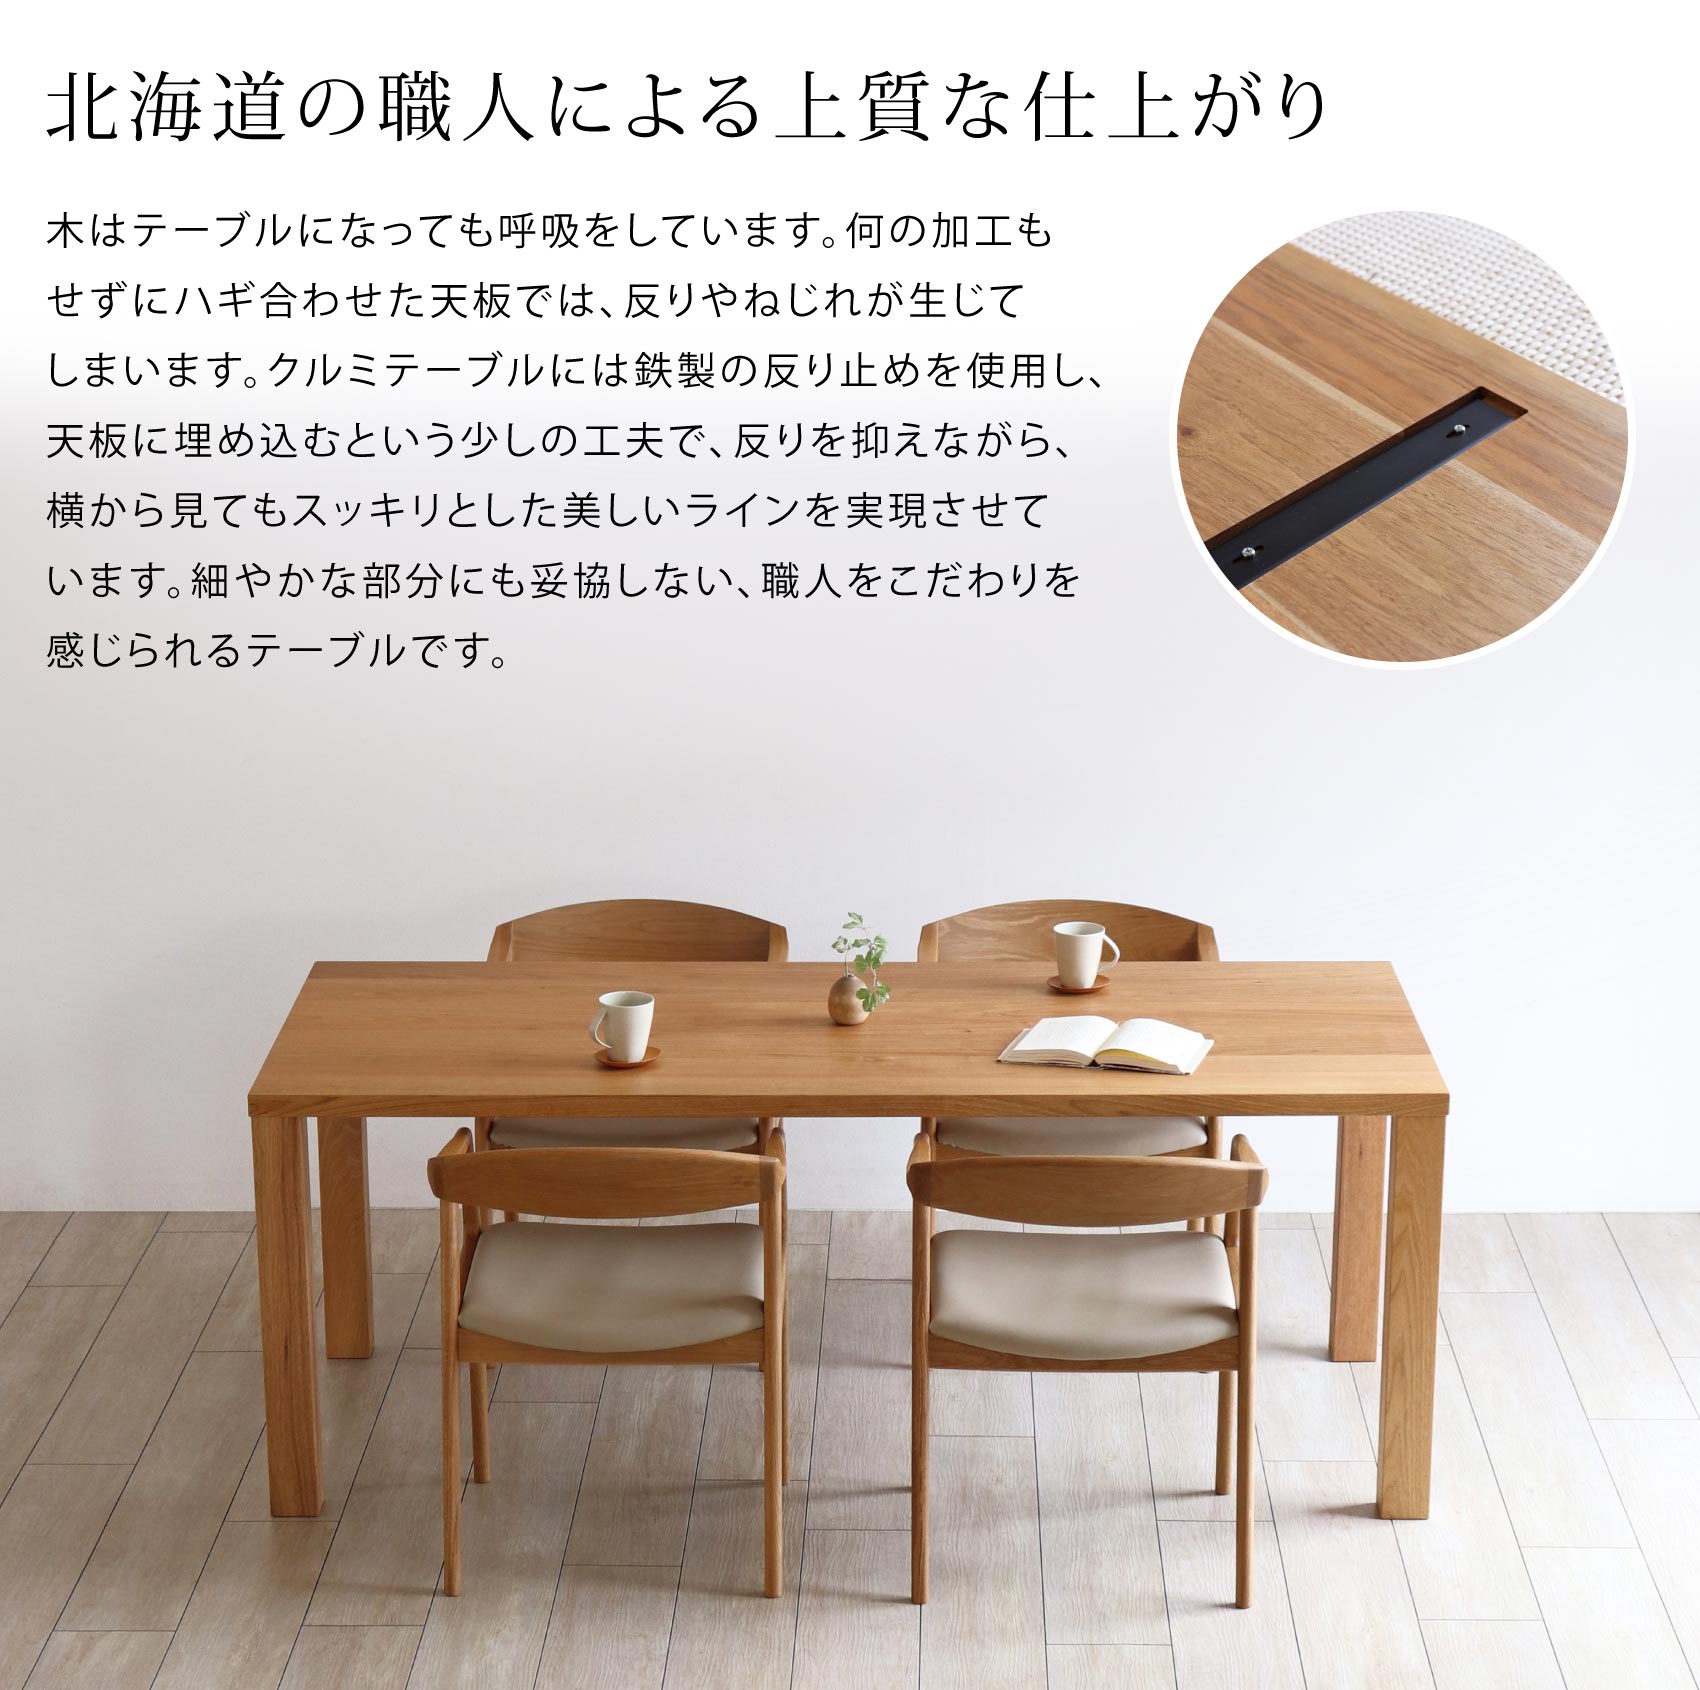 北海道の家具職人がつくる上質な仕上がり「クルミテーブル」